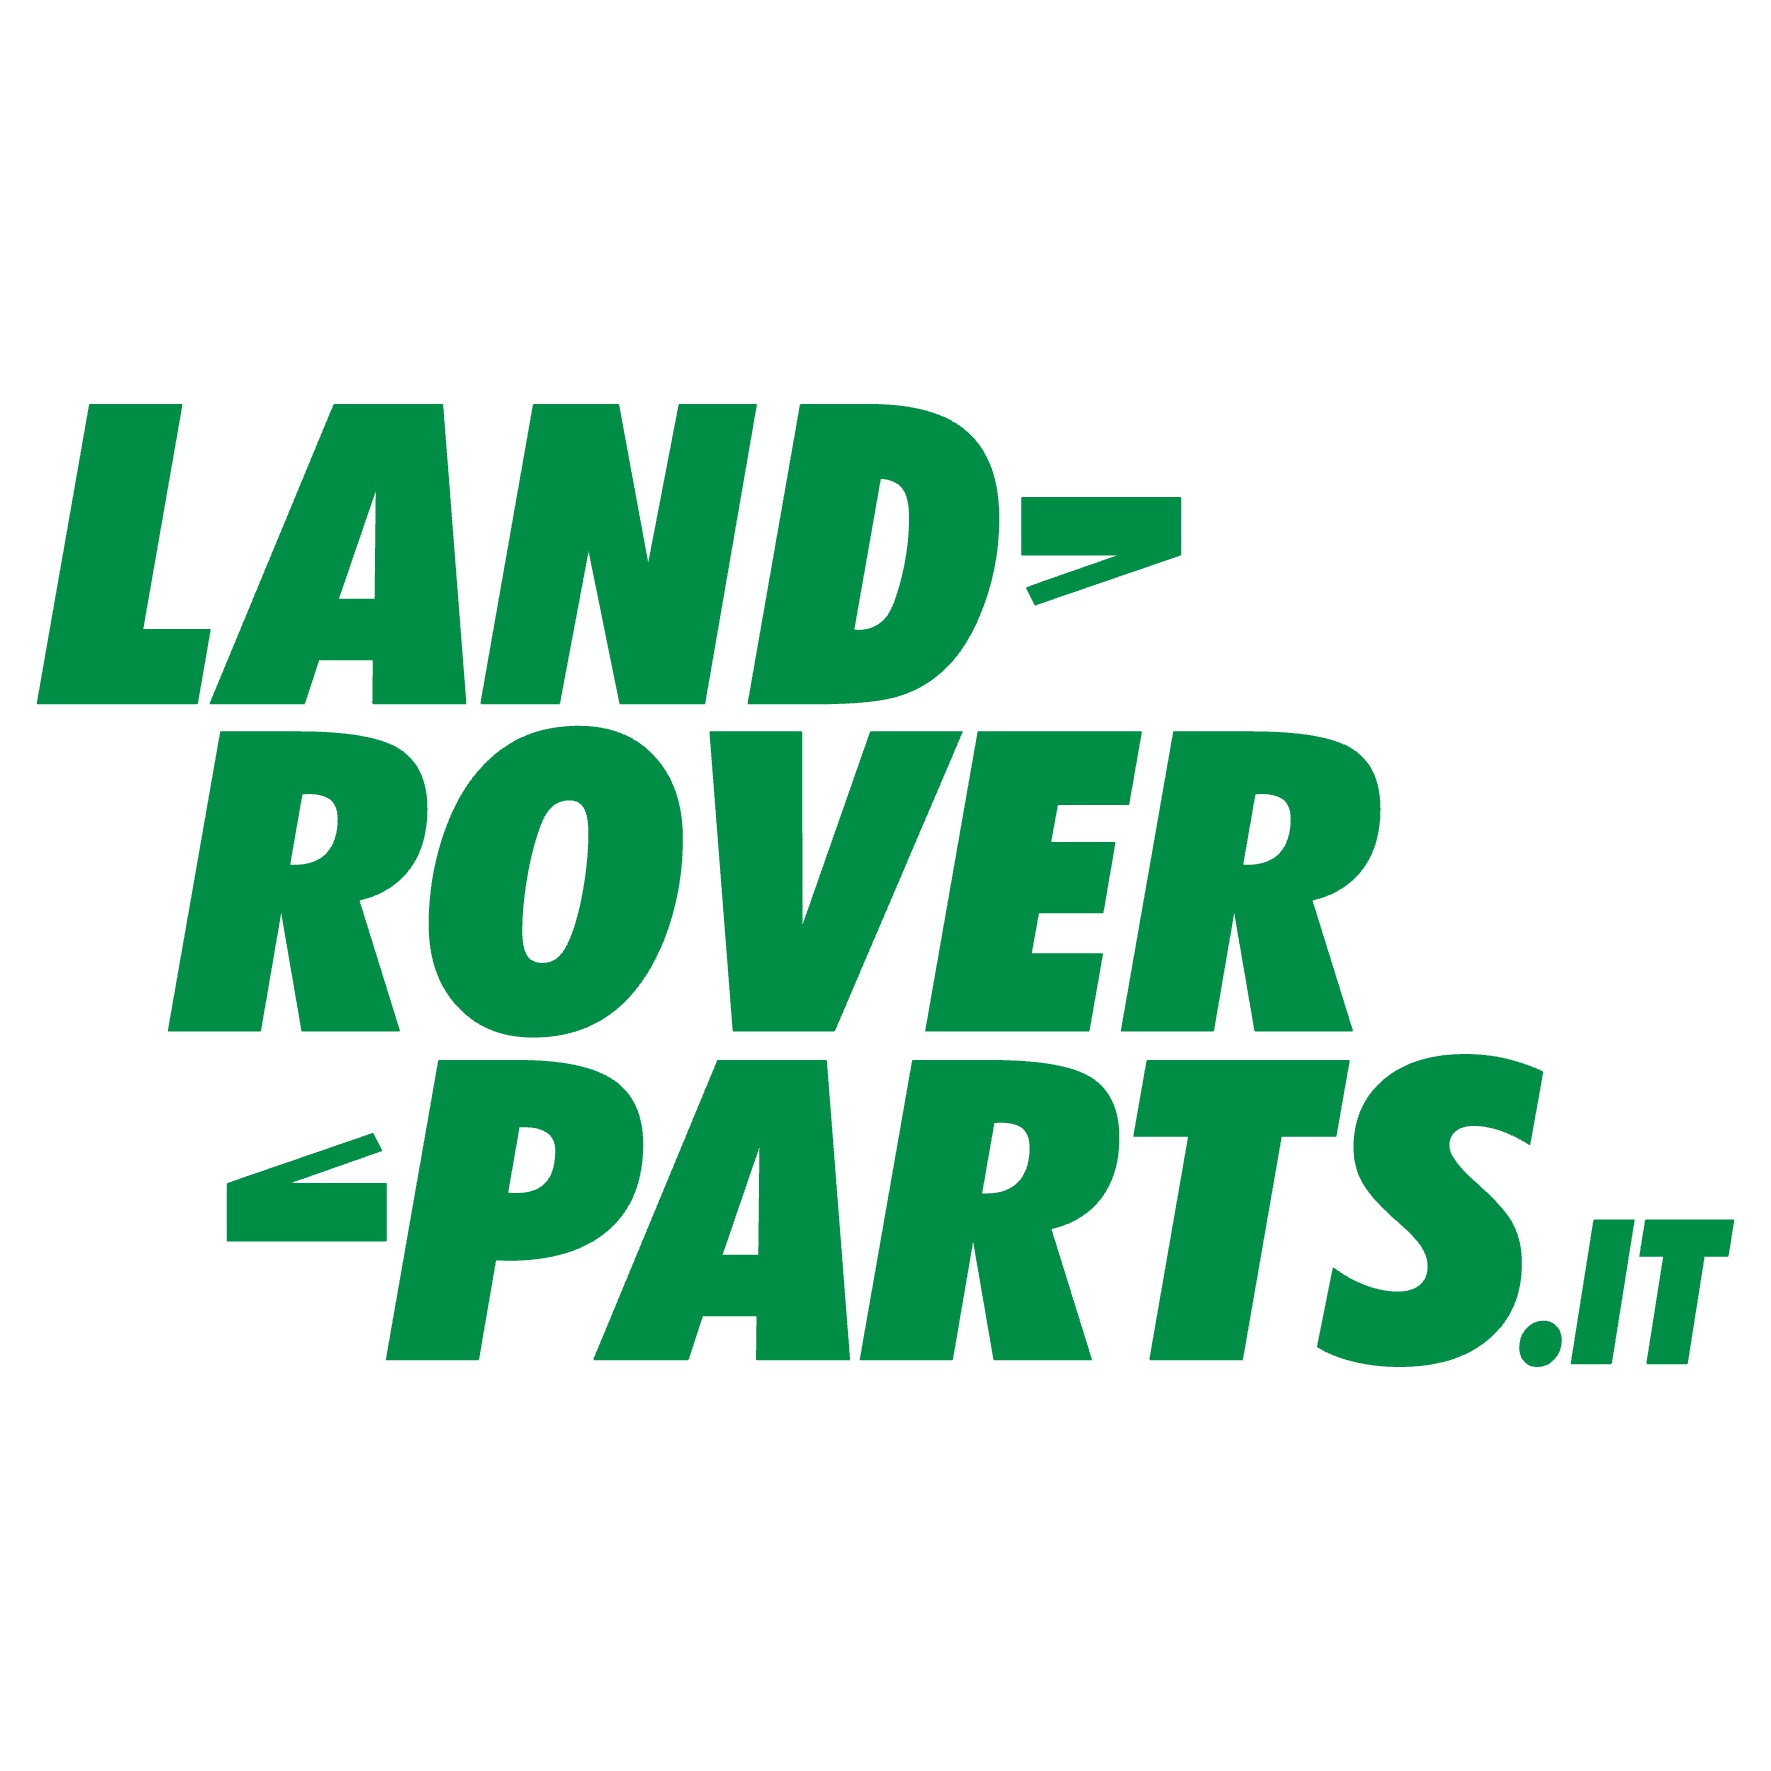 Landroverparts.it - Landisti per Passione non per business!